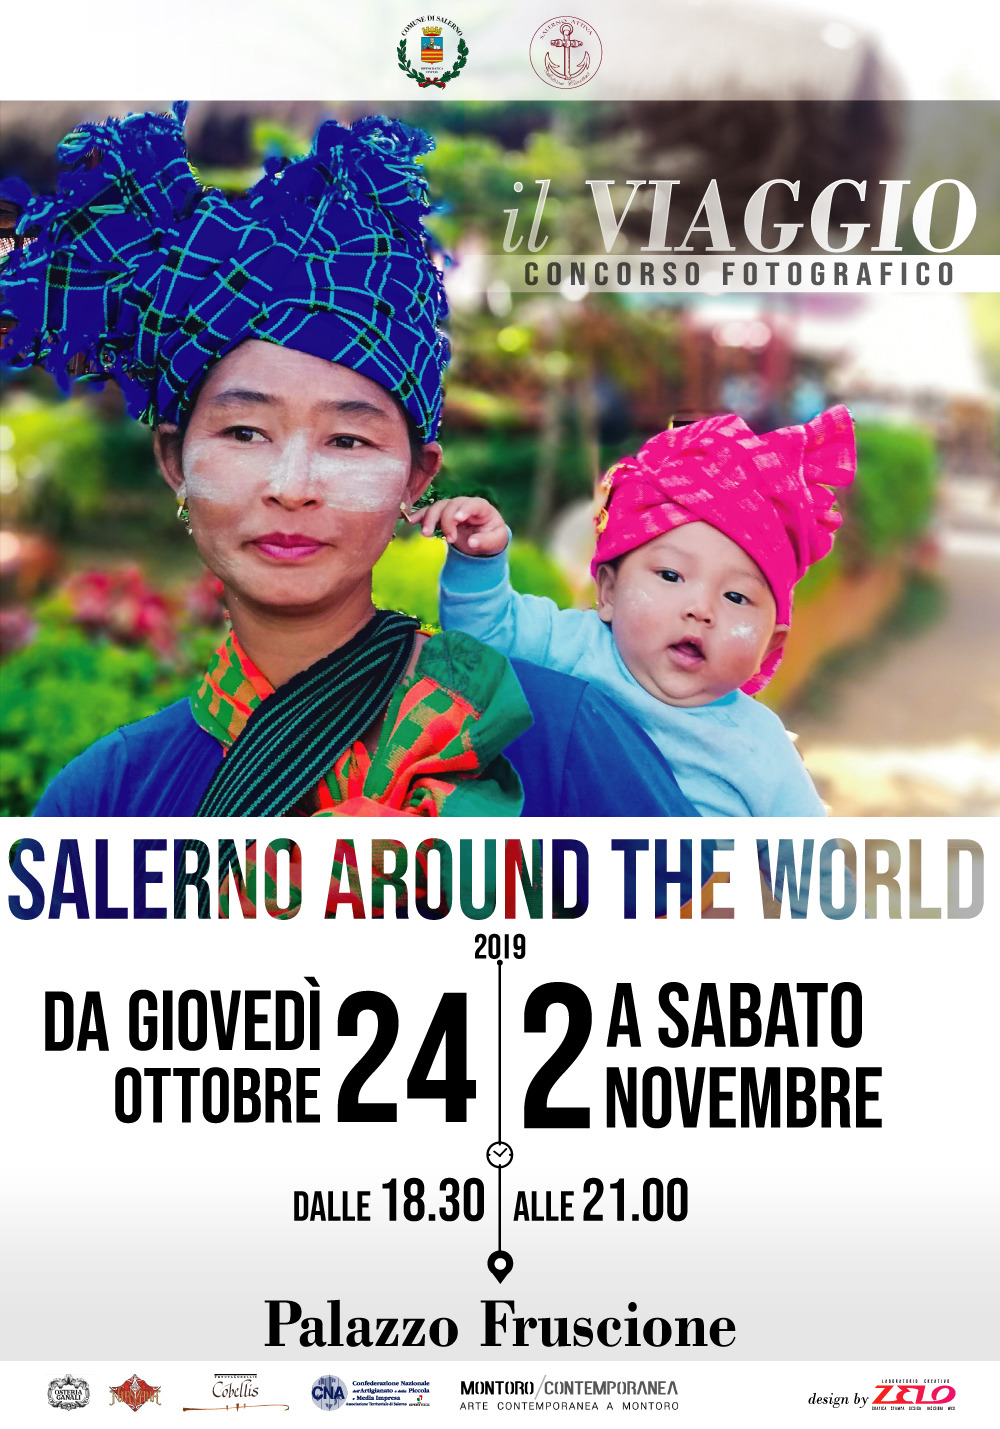 SALERNO AROUND THE WORLD – IL VIAGGIO, Palazzo Fruscione Salerno da giovedì 24 ottobre a sabato 2 novembre 2019